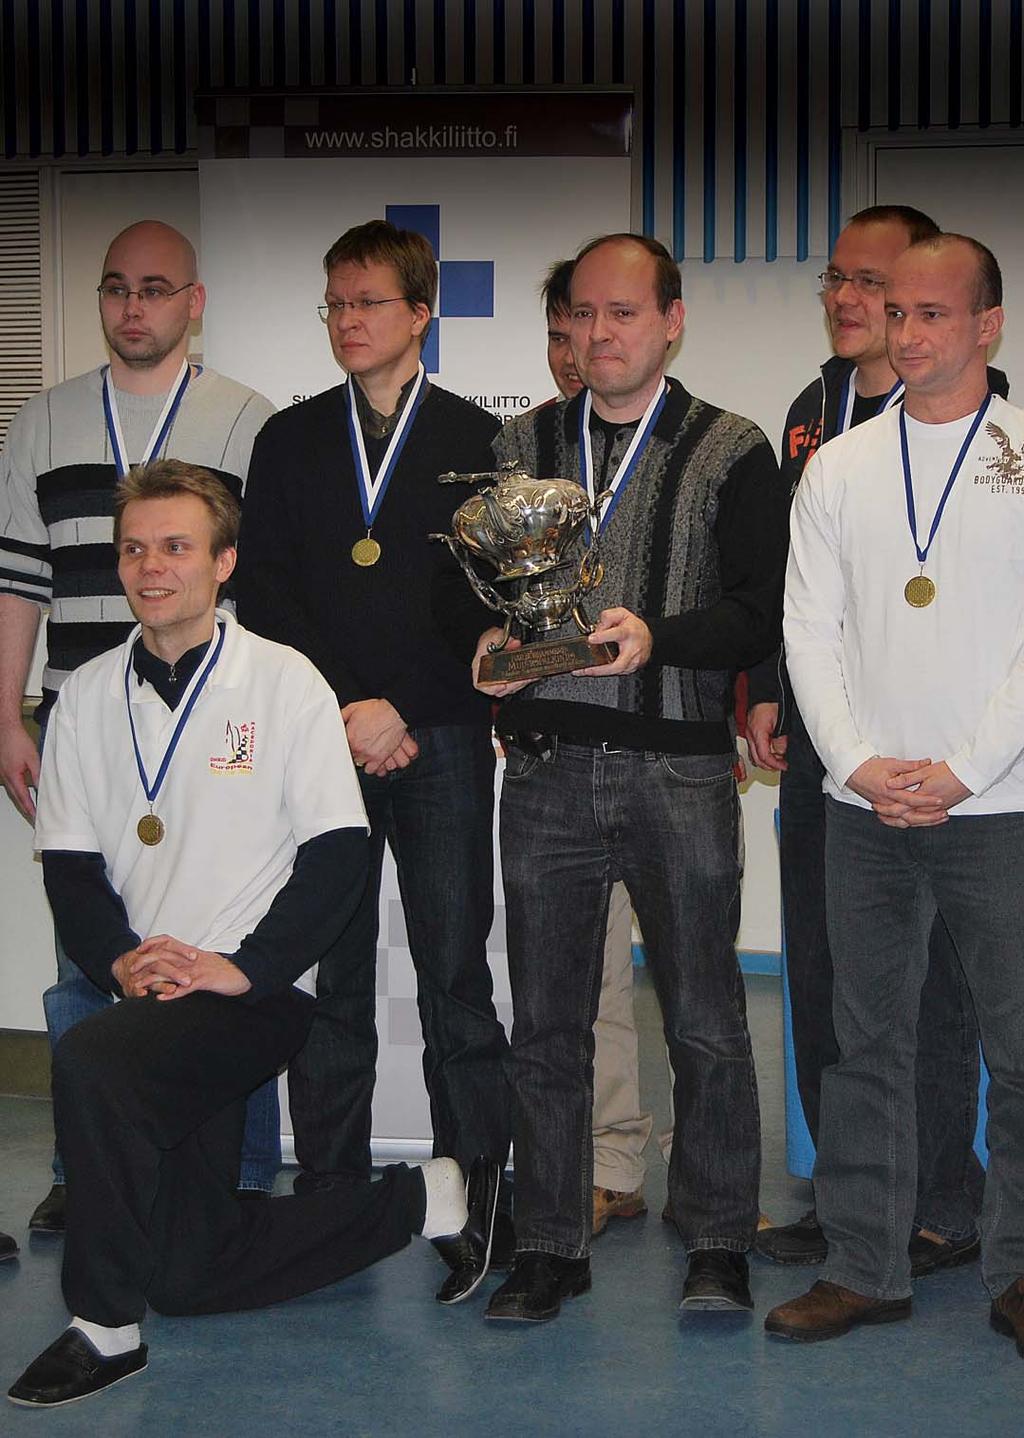 3 / 2010 SUOMEN SHAKKI ETELÄ-VANTAAN SHAKKI uusi seurajoukkueiden Suomen mestaruutensa. Mestaruus ratkesi viimeisellä kierroksella jännittävien vaiheiden jälkeen.